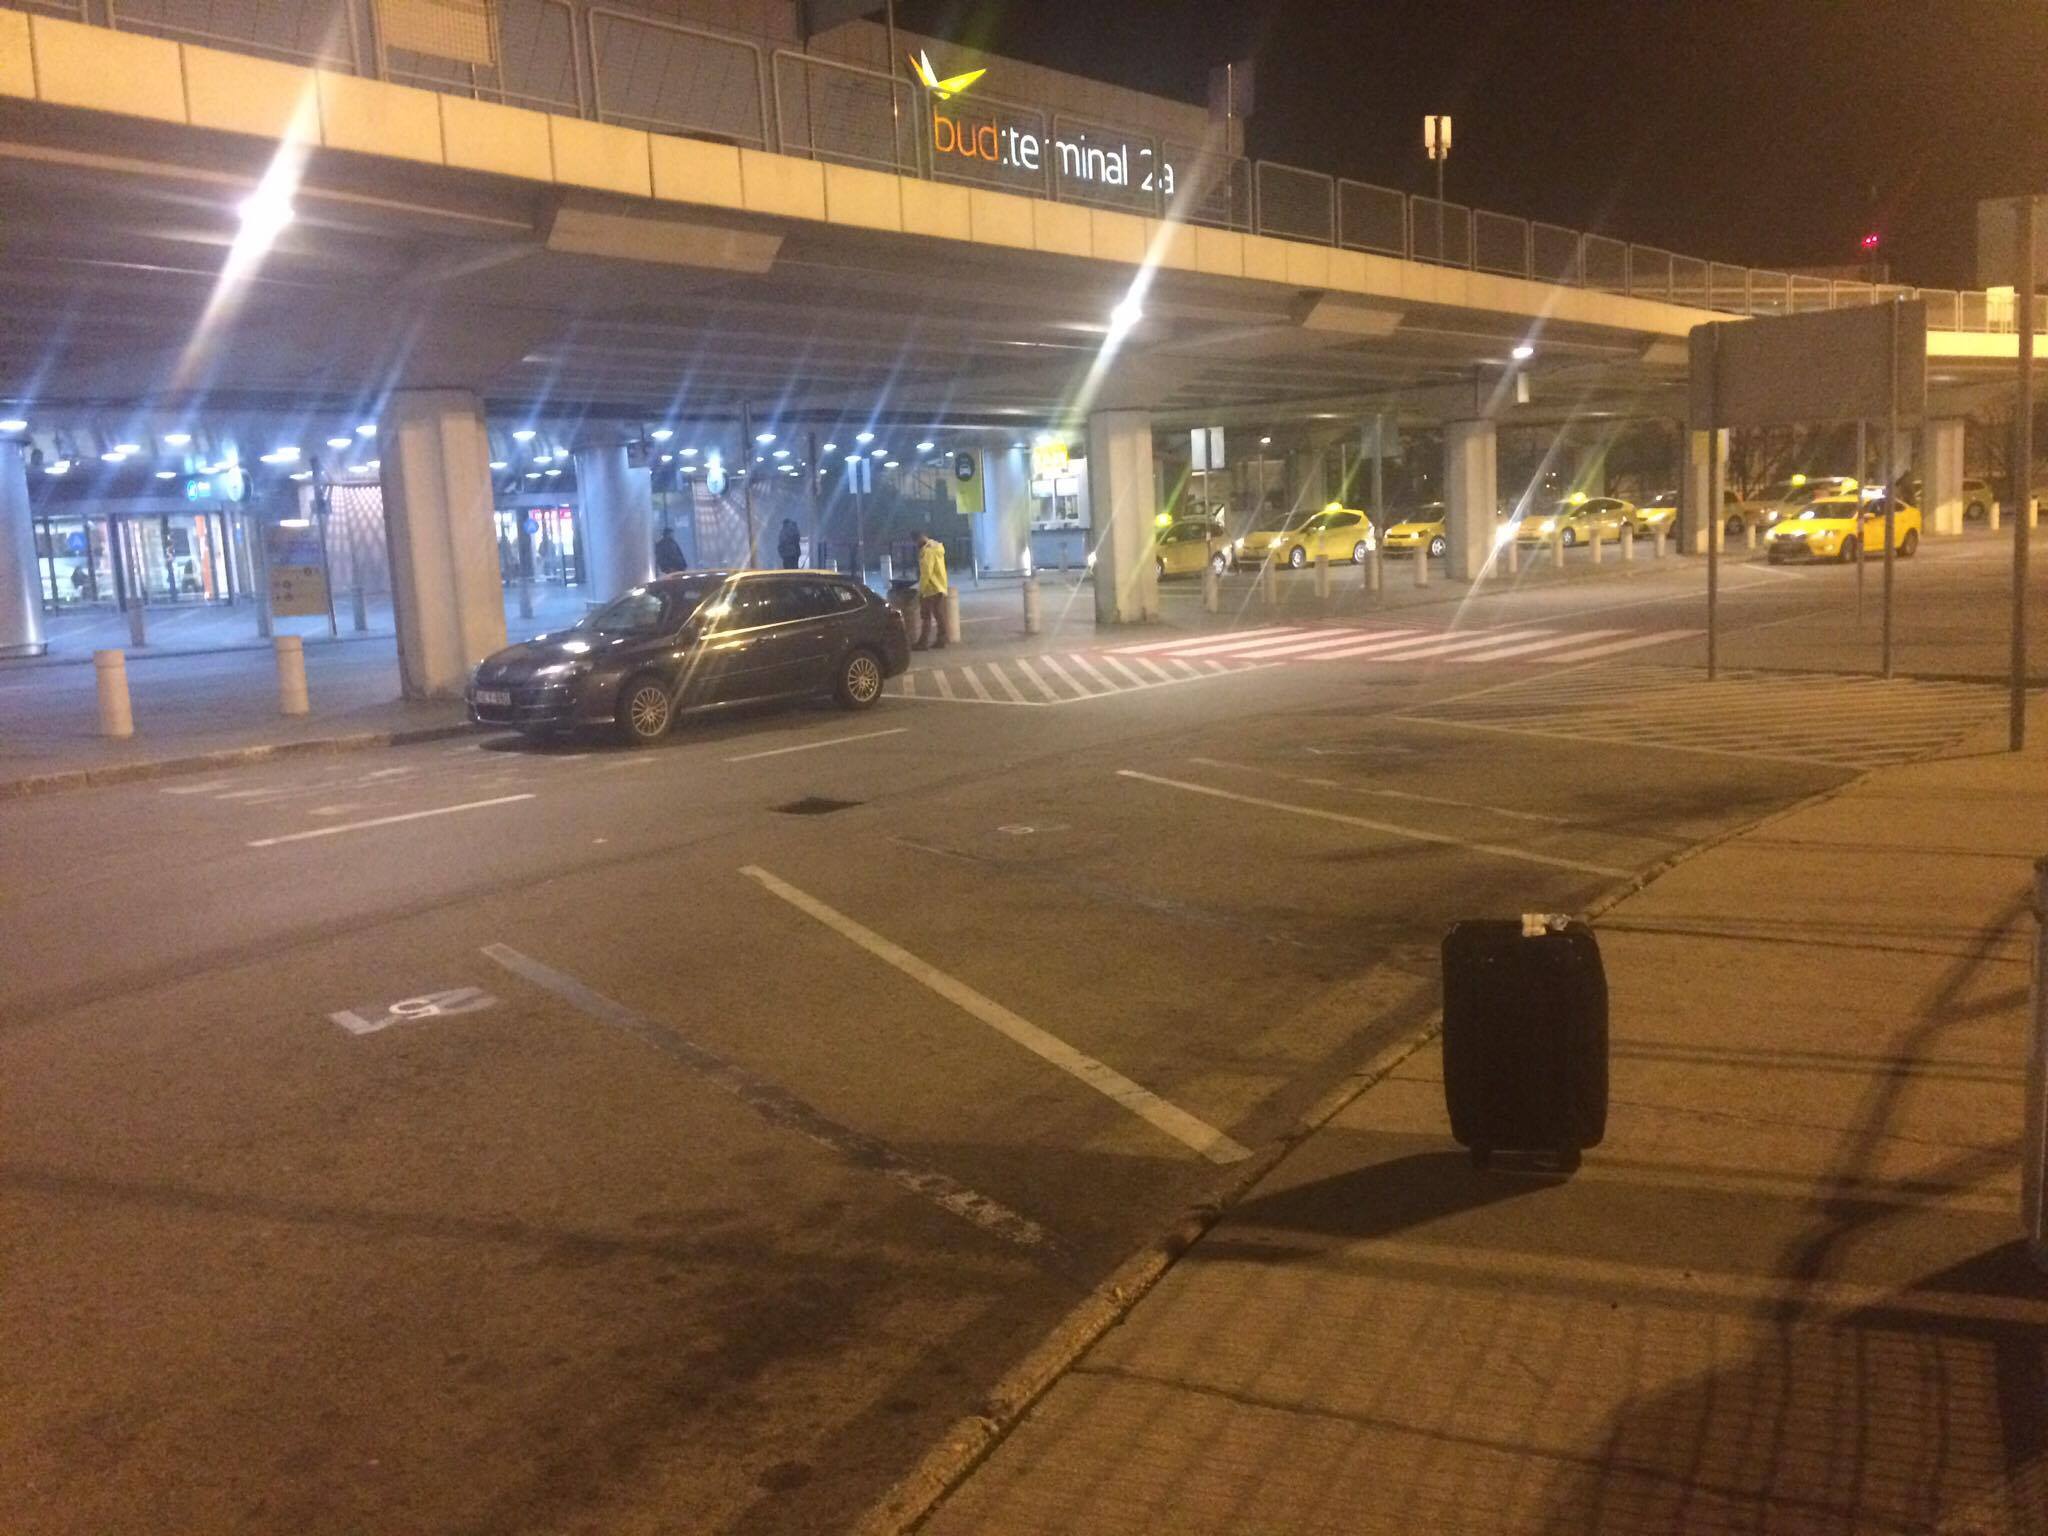 Breaking: Bombariadó Ferihegyen, gyanús csomagot találtak a reptéren - Blikk